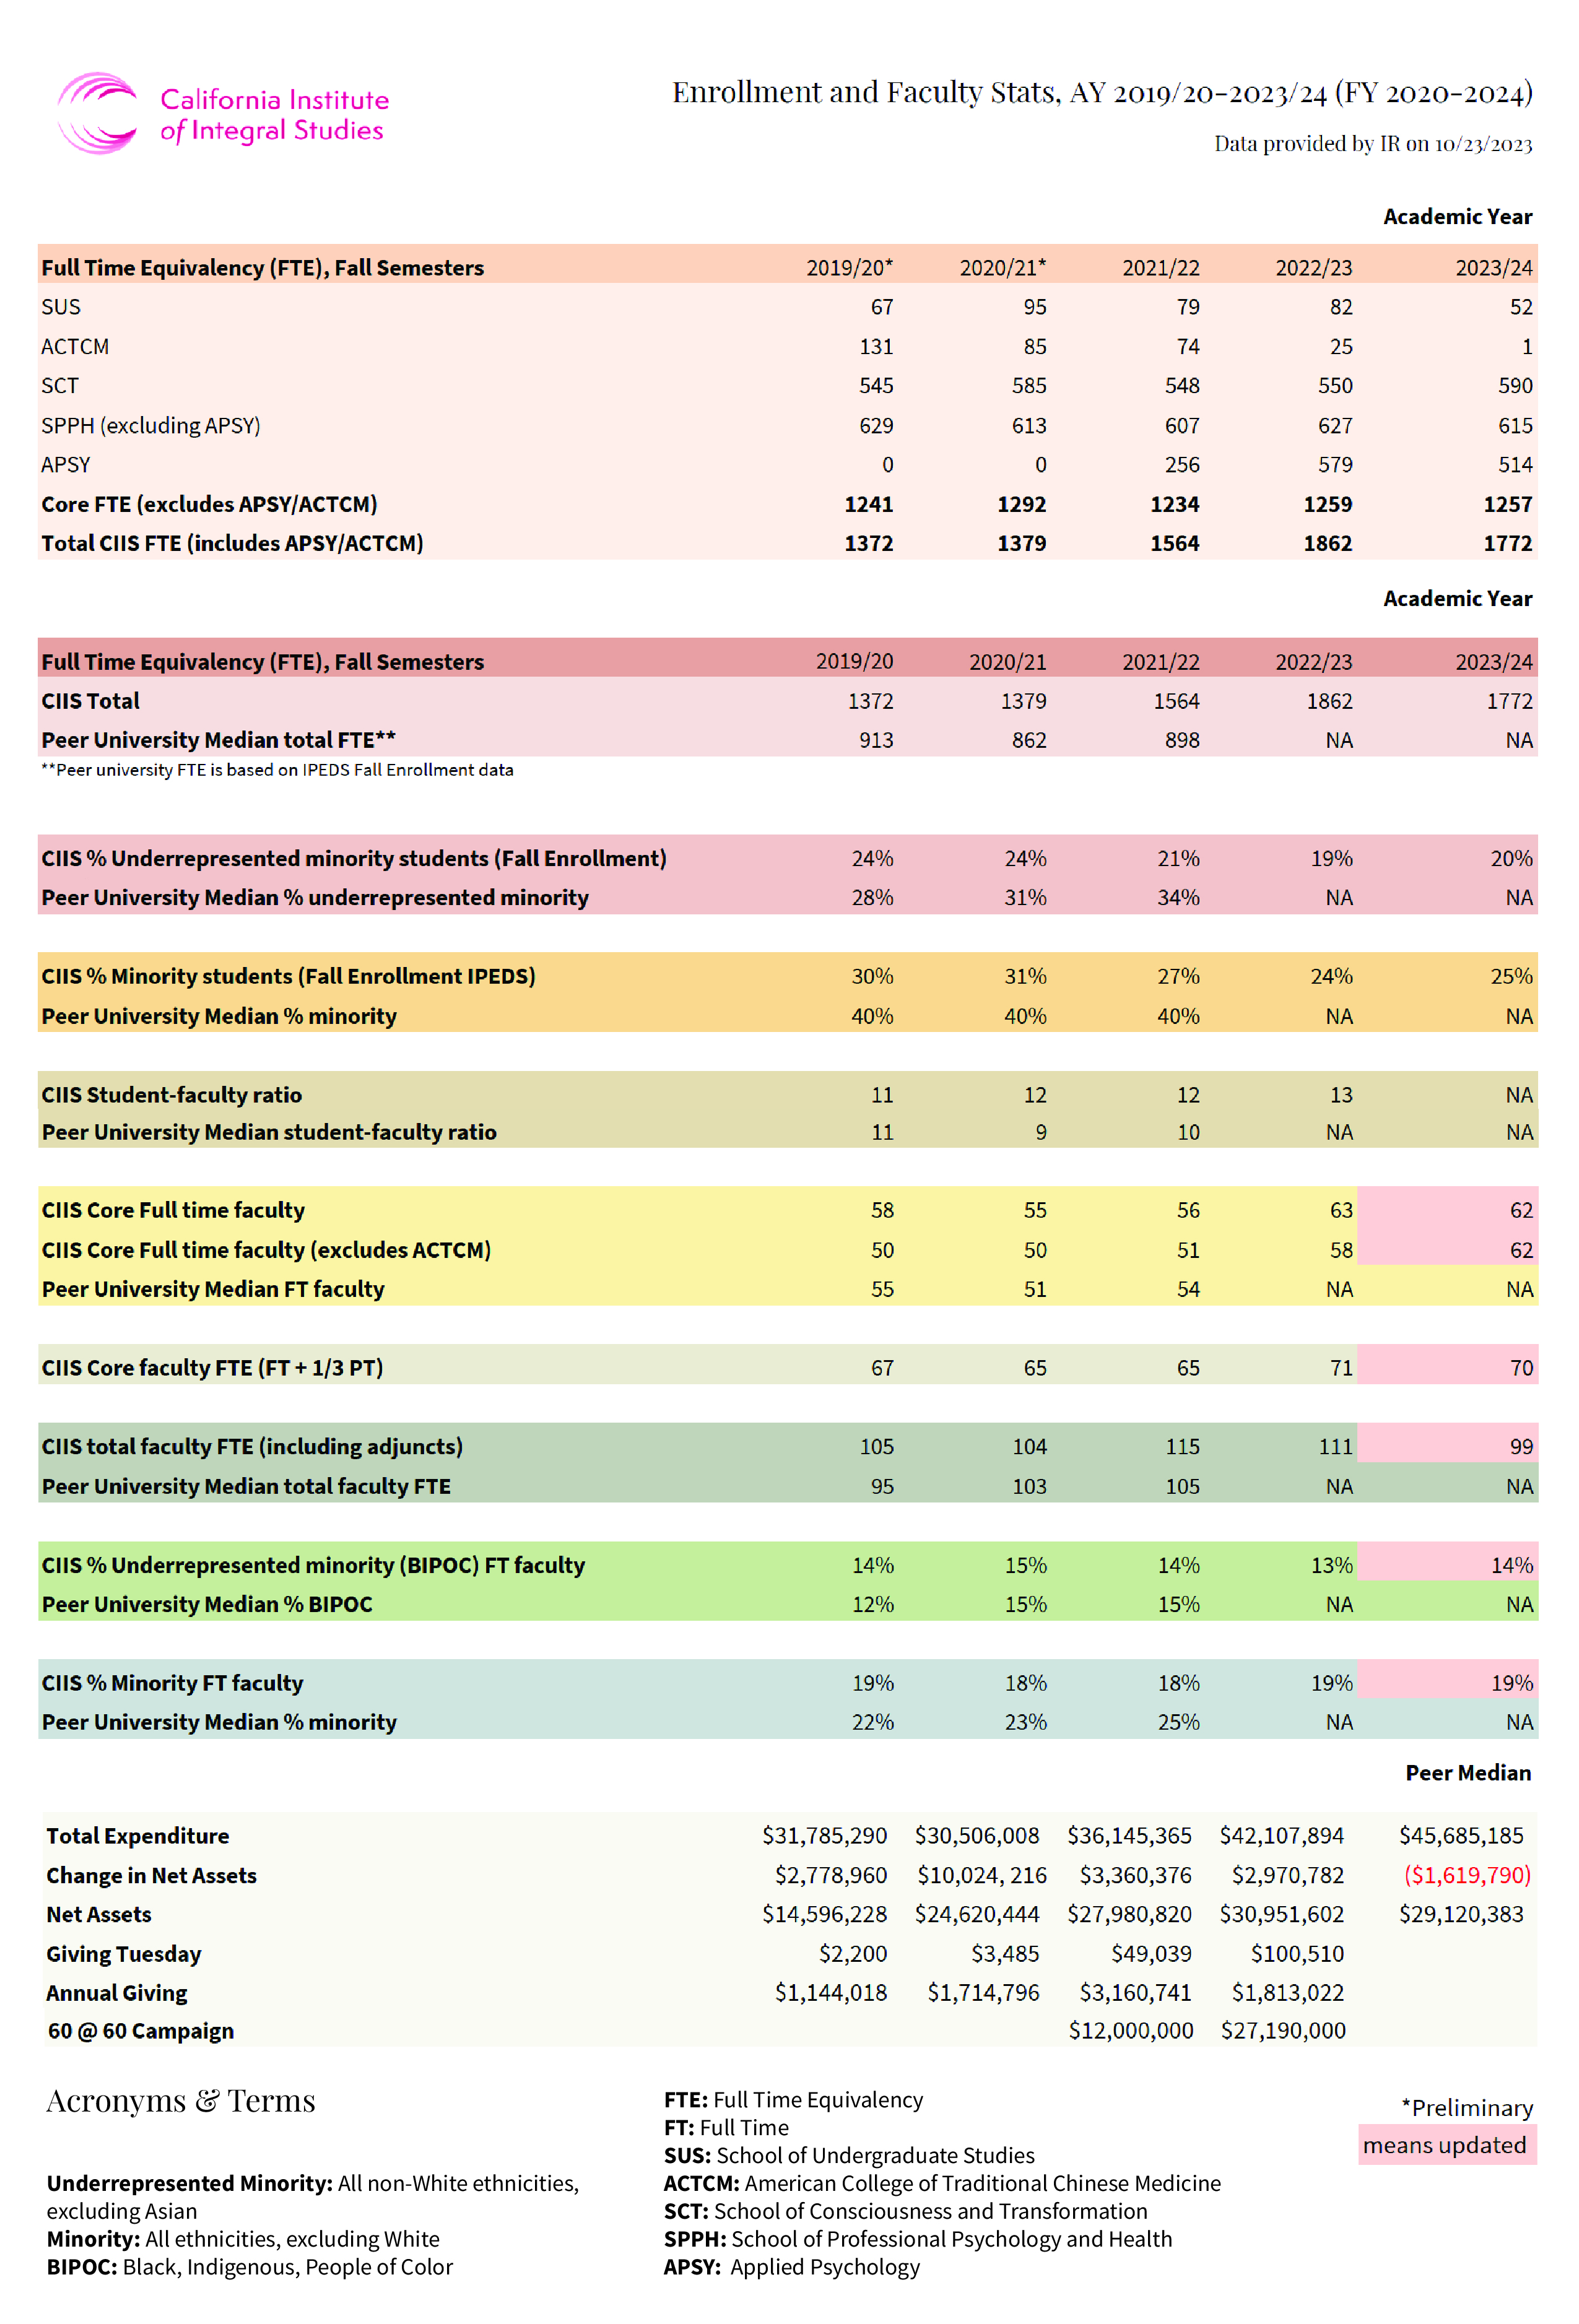 CIIS Enrollment and Faculty Statistics